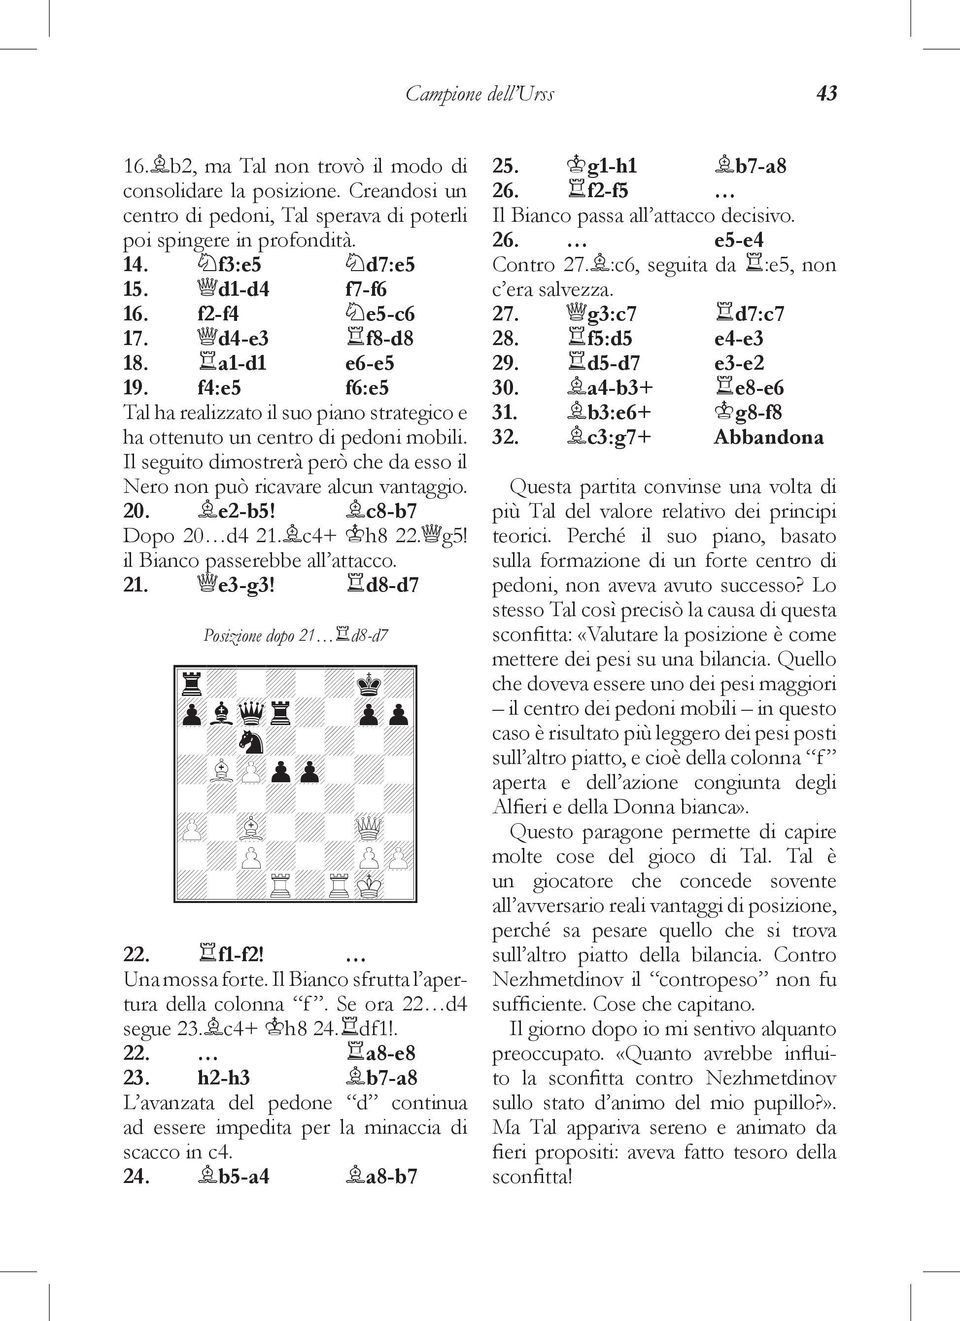 Il seguito dimostrerà però che da esso il Nero non può ricavare alcun vantaggio. 20. e2-b5! c8-b7 Dopo 20 d4 21. c4+ h8 22. g5! il Bianco passerebbe all attacco. 21. e3-g3!